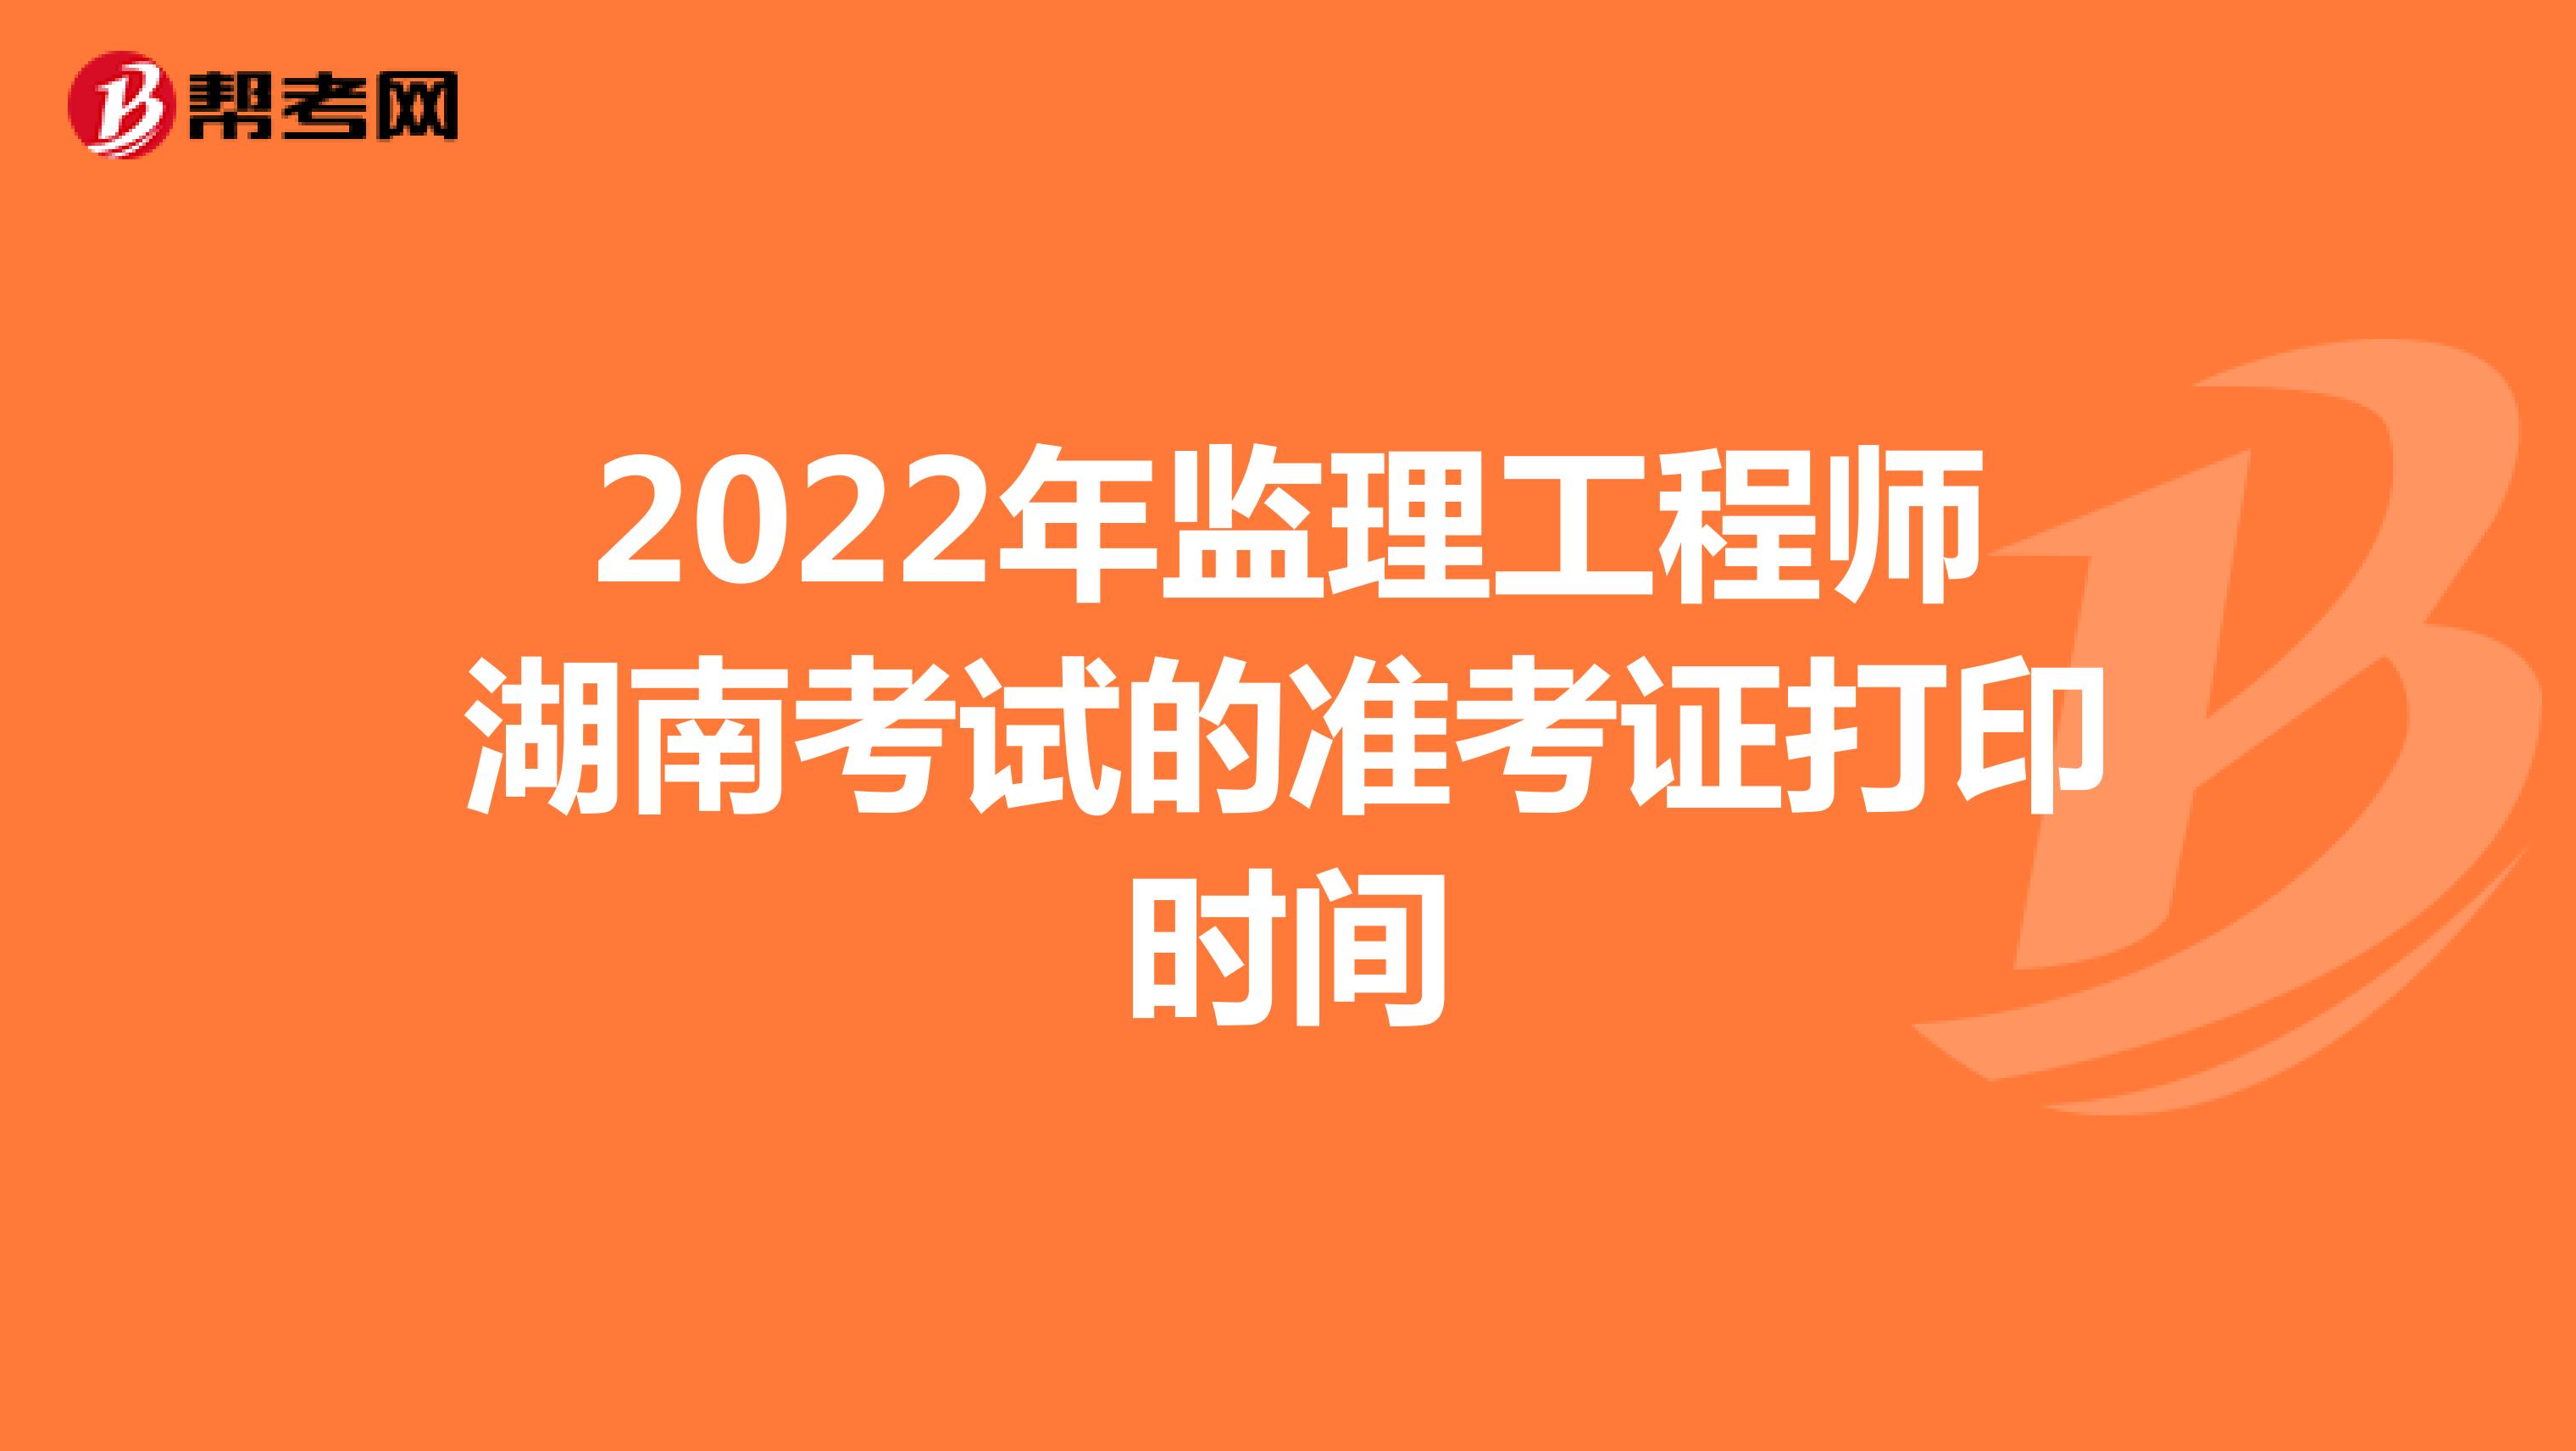 2022年监理工程师湖南考试的准考证打印时间